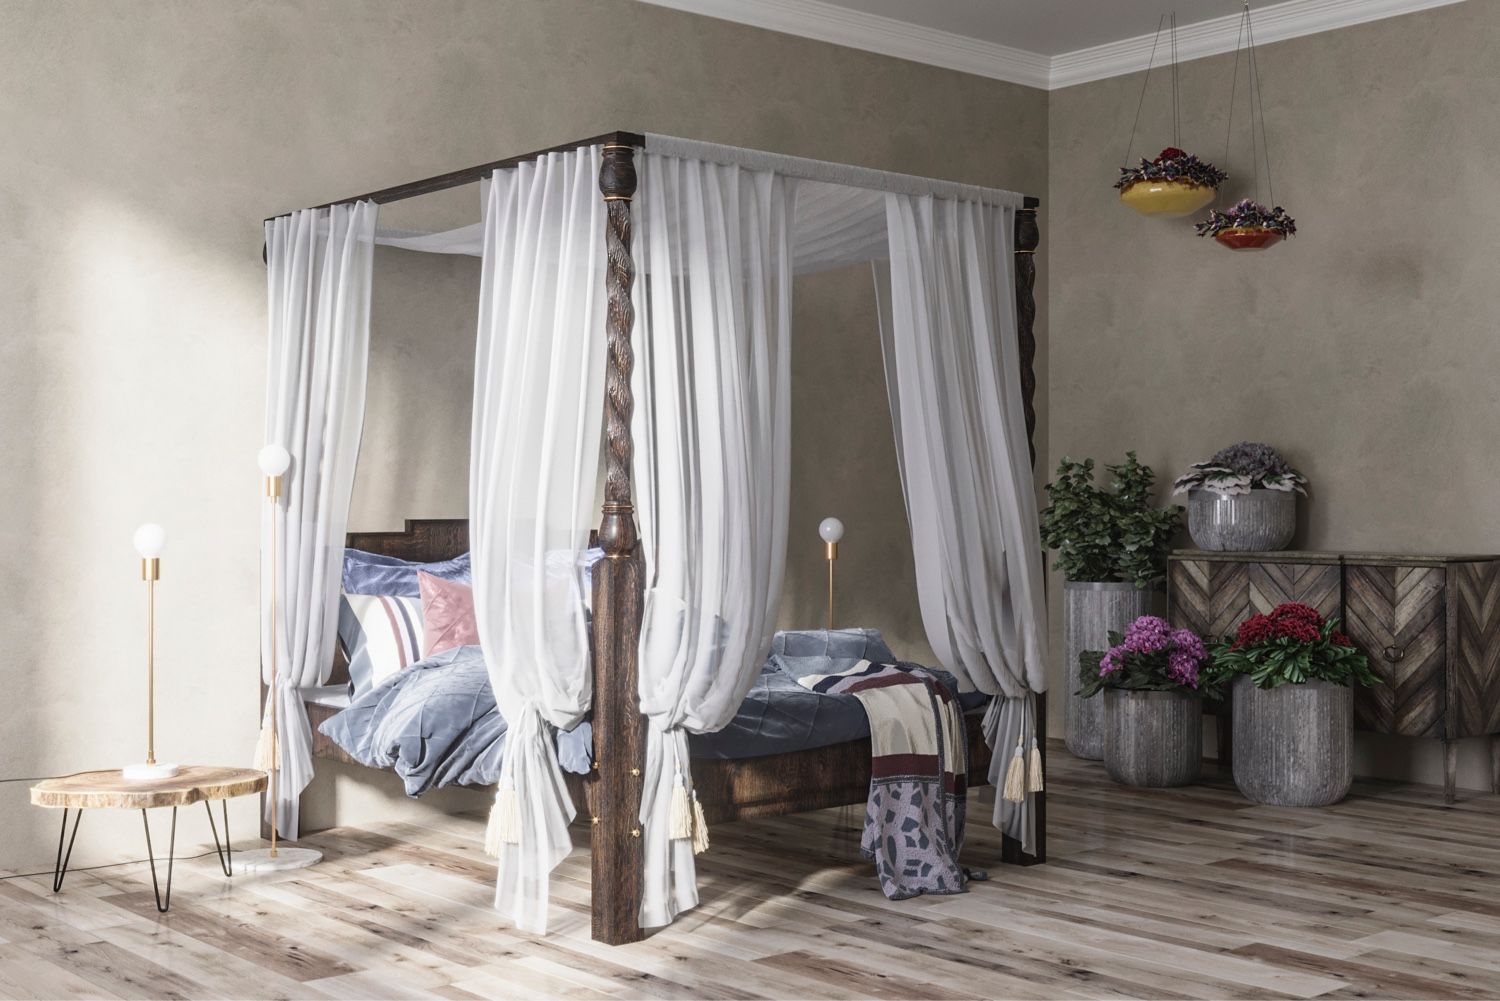 Кровать с балдахином – романтика в вашей спальне